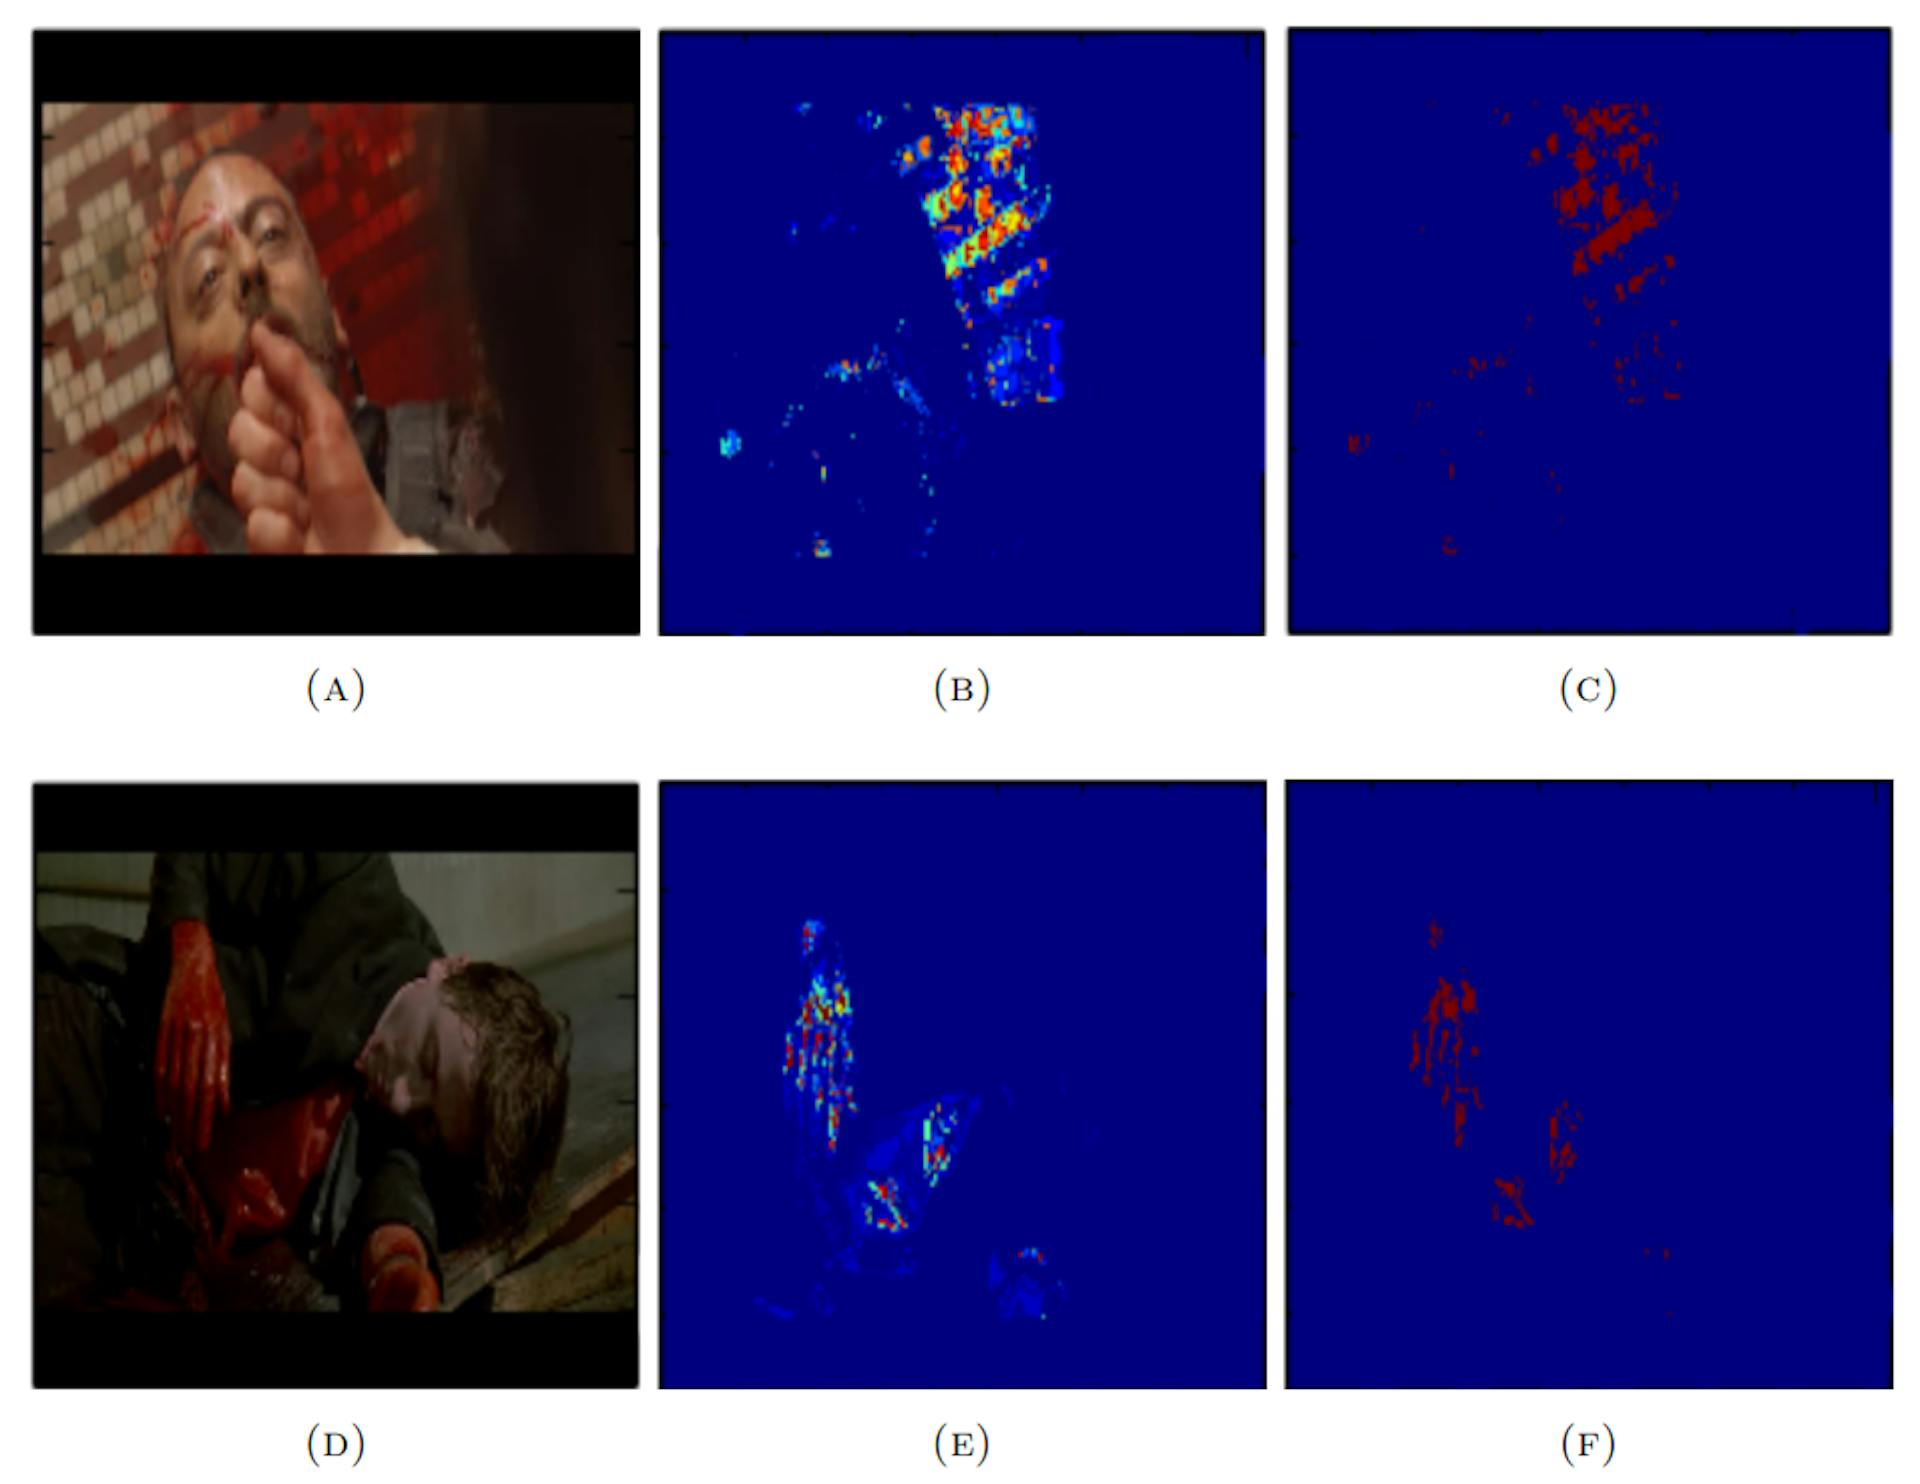 Şekil 4.6: Kan dedektörünün Hollywood veri setindeki örnek çerçevelerdeki performansını gösteren şekil. İlk sütundaki görüntüler (A ve D) giriş görüntüleridir, ikinci sütundaki görüntüler (B ve E) kan olasılık haritalarıdır ve son sütundaki görüntüler (C ve F) ikilileştirilmiş kan olasılık haritalarıdır.